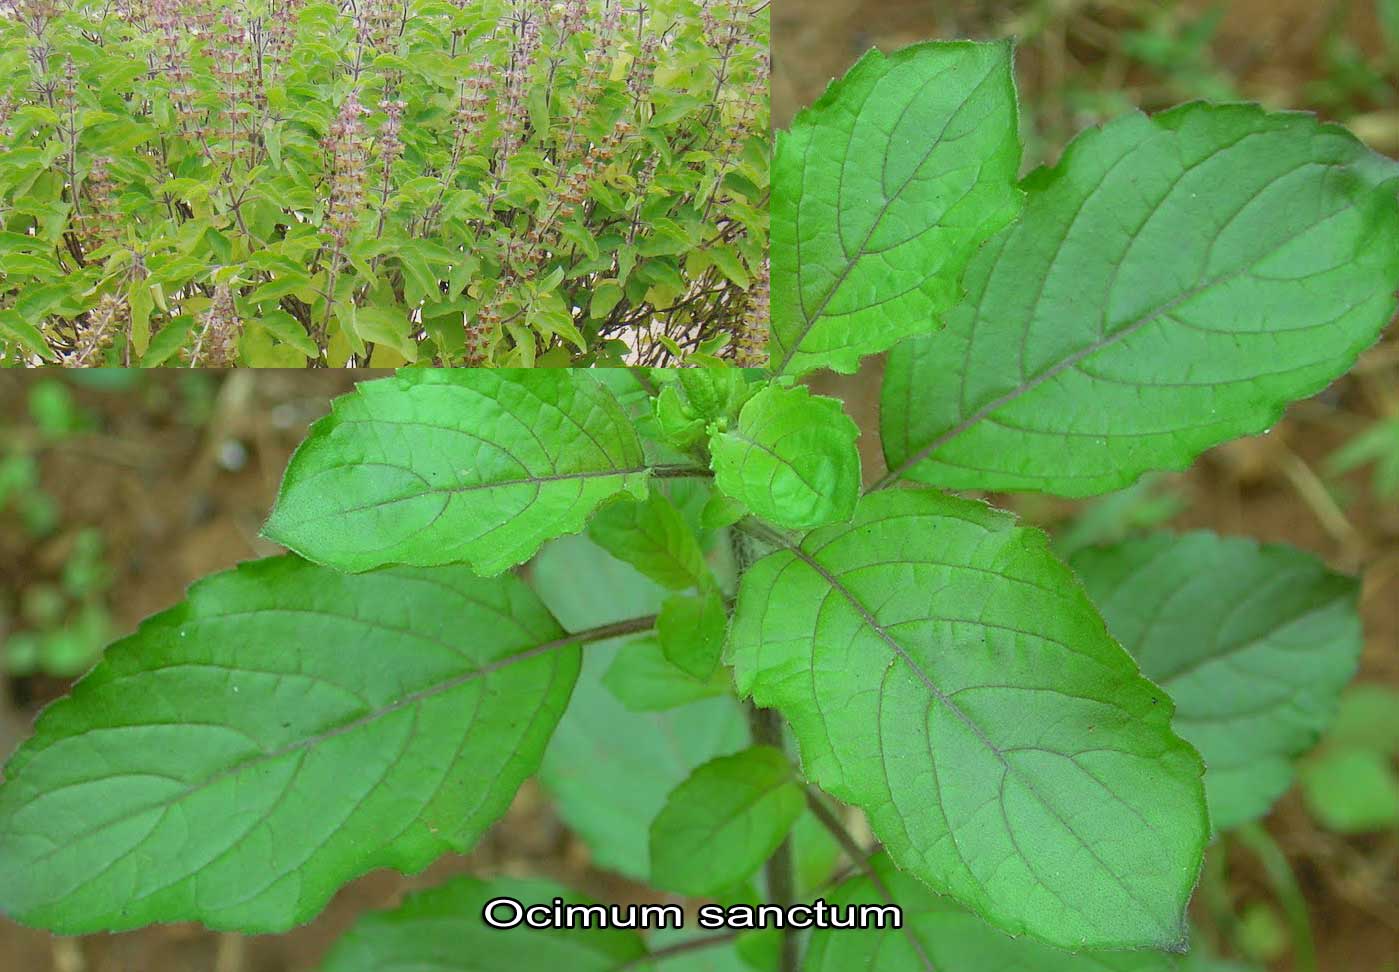 ocimum sanctum plants tulsi lamiaceae family medicinal tulasi